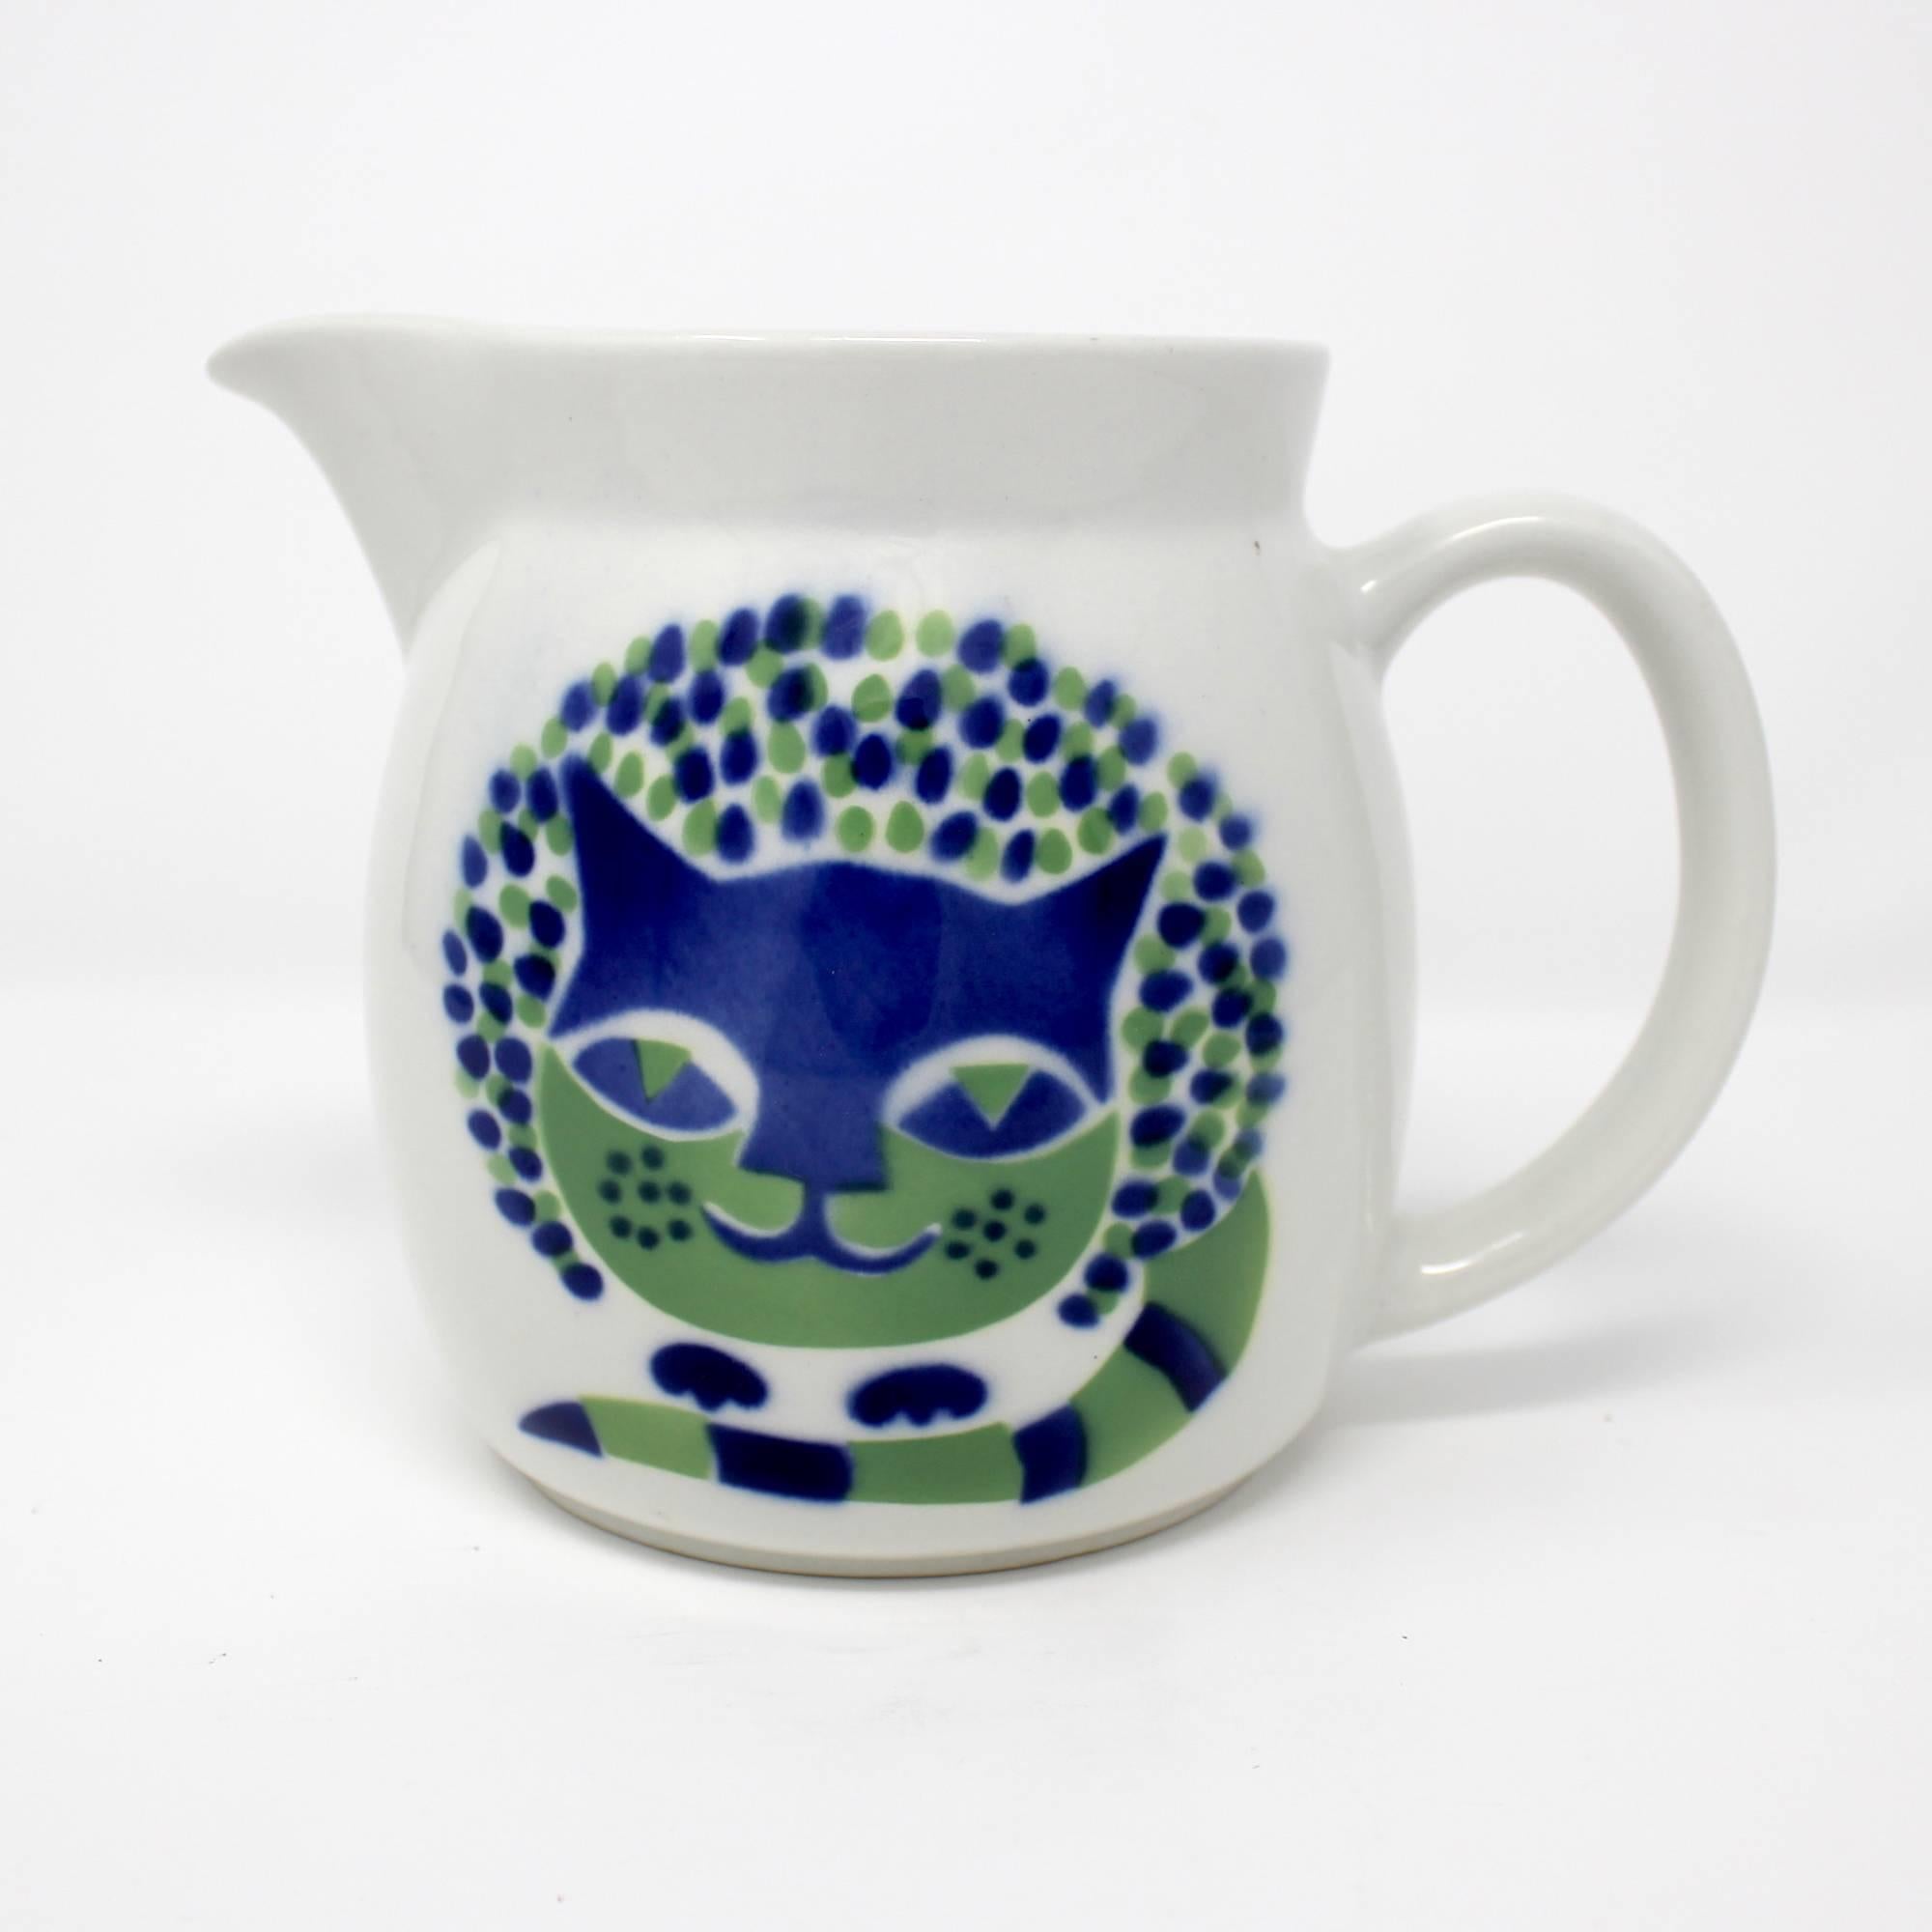 1960s ceramic pitcher with cat design by Kaj Frank for Arabia, Finland.